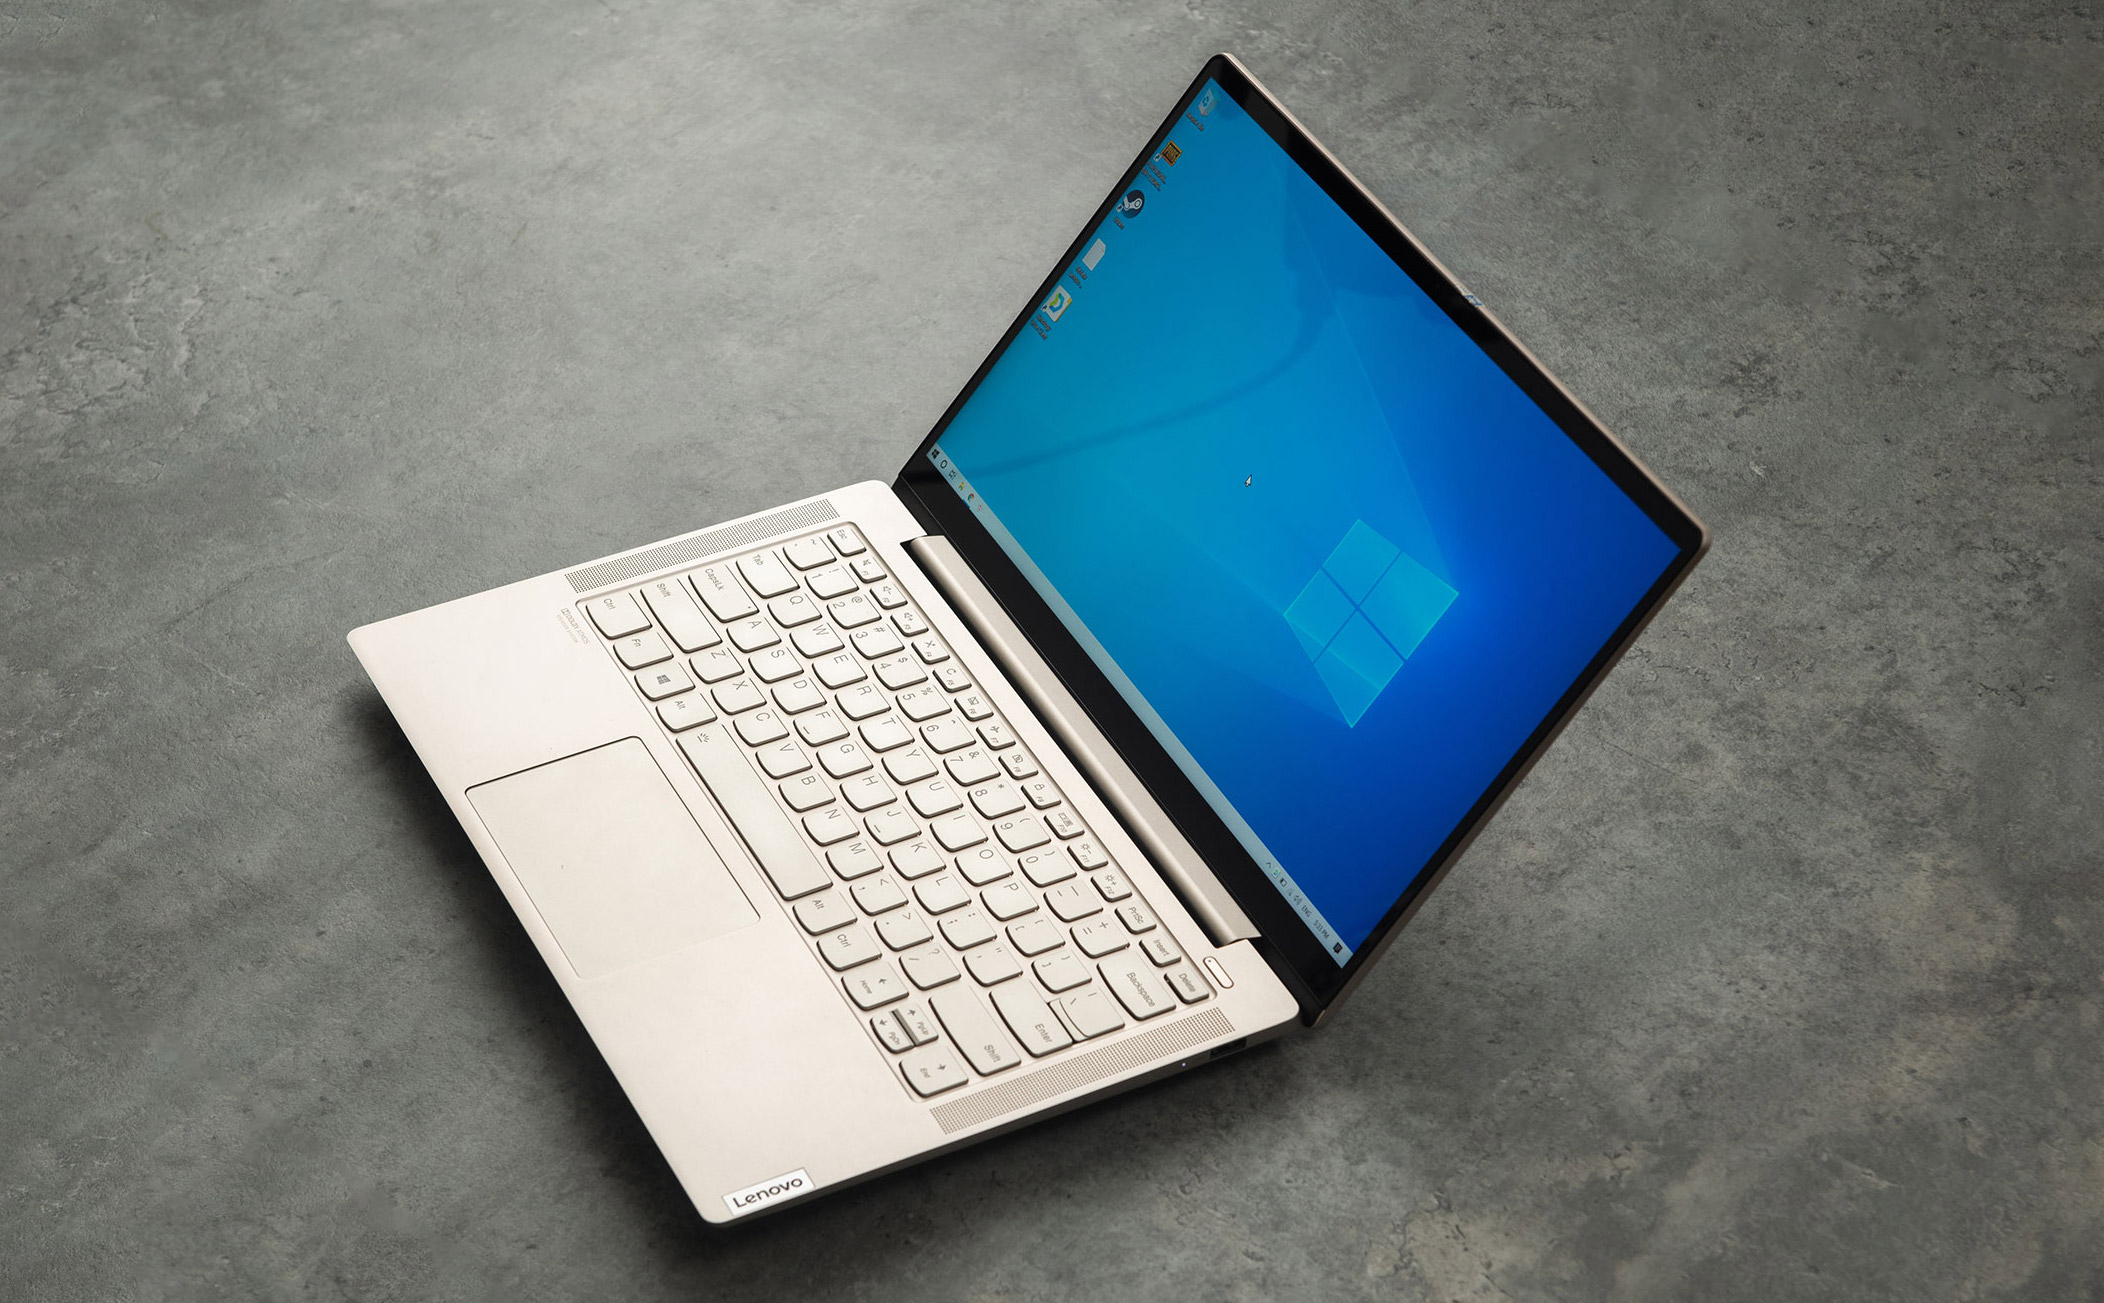 Trải nghiệm laptop Lenovo Yoga S740: đơn giản, đẹp hiệu quả, bàn phím quá ngon, hiệu năng/giá tốt